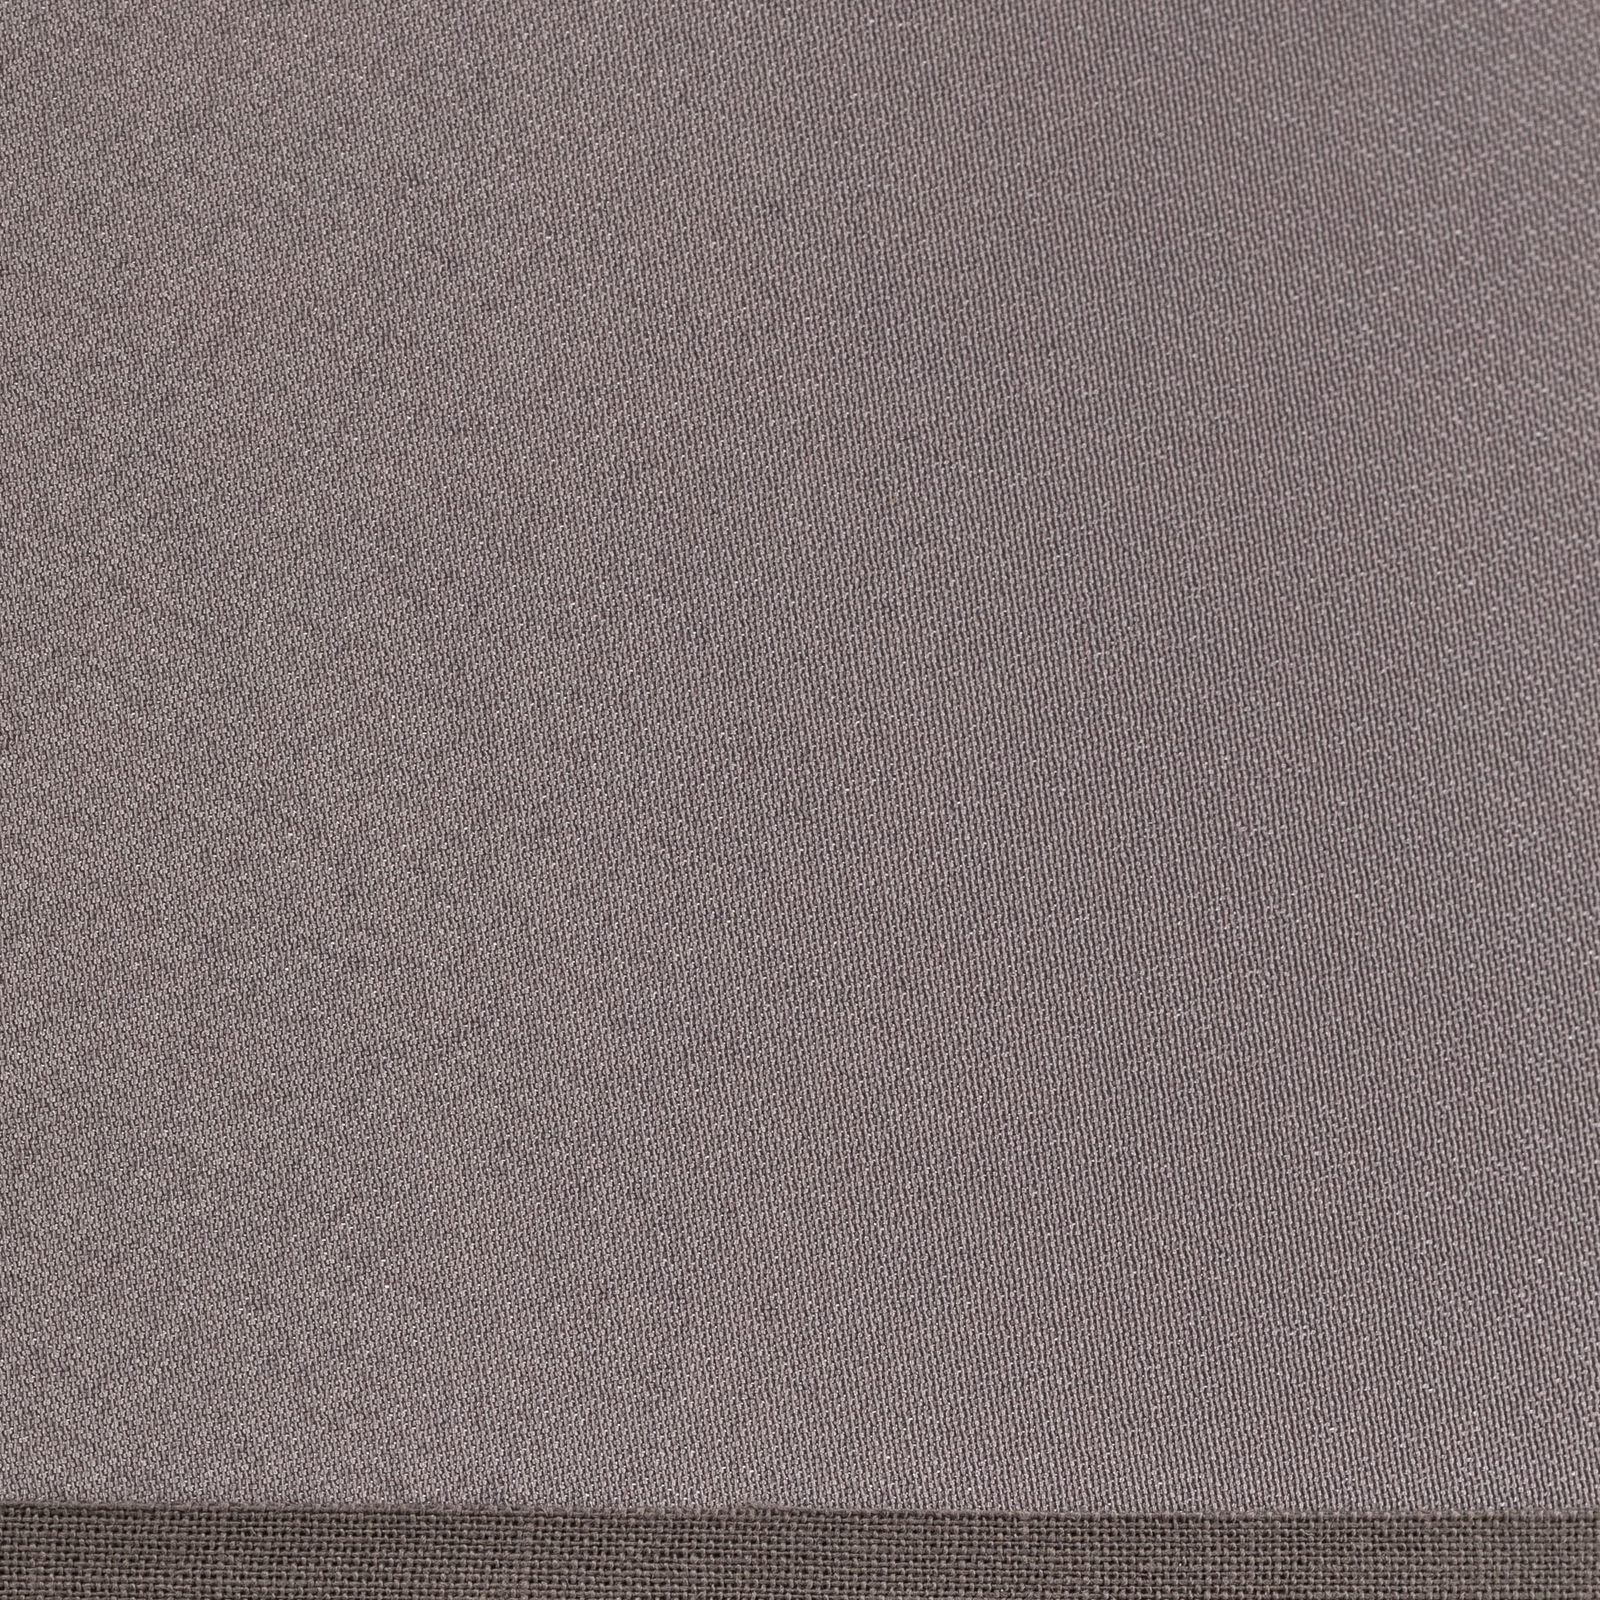 Lampeskjerm Cone høyde 25,5 cm, chintz grå/hvit